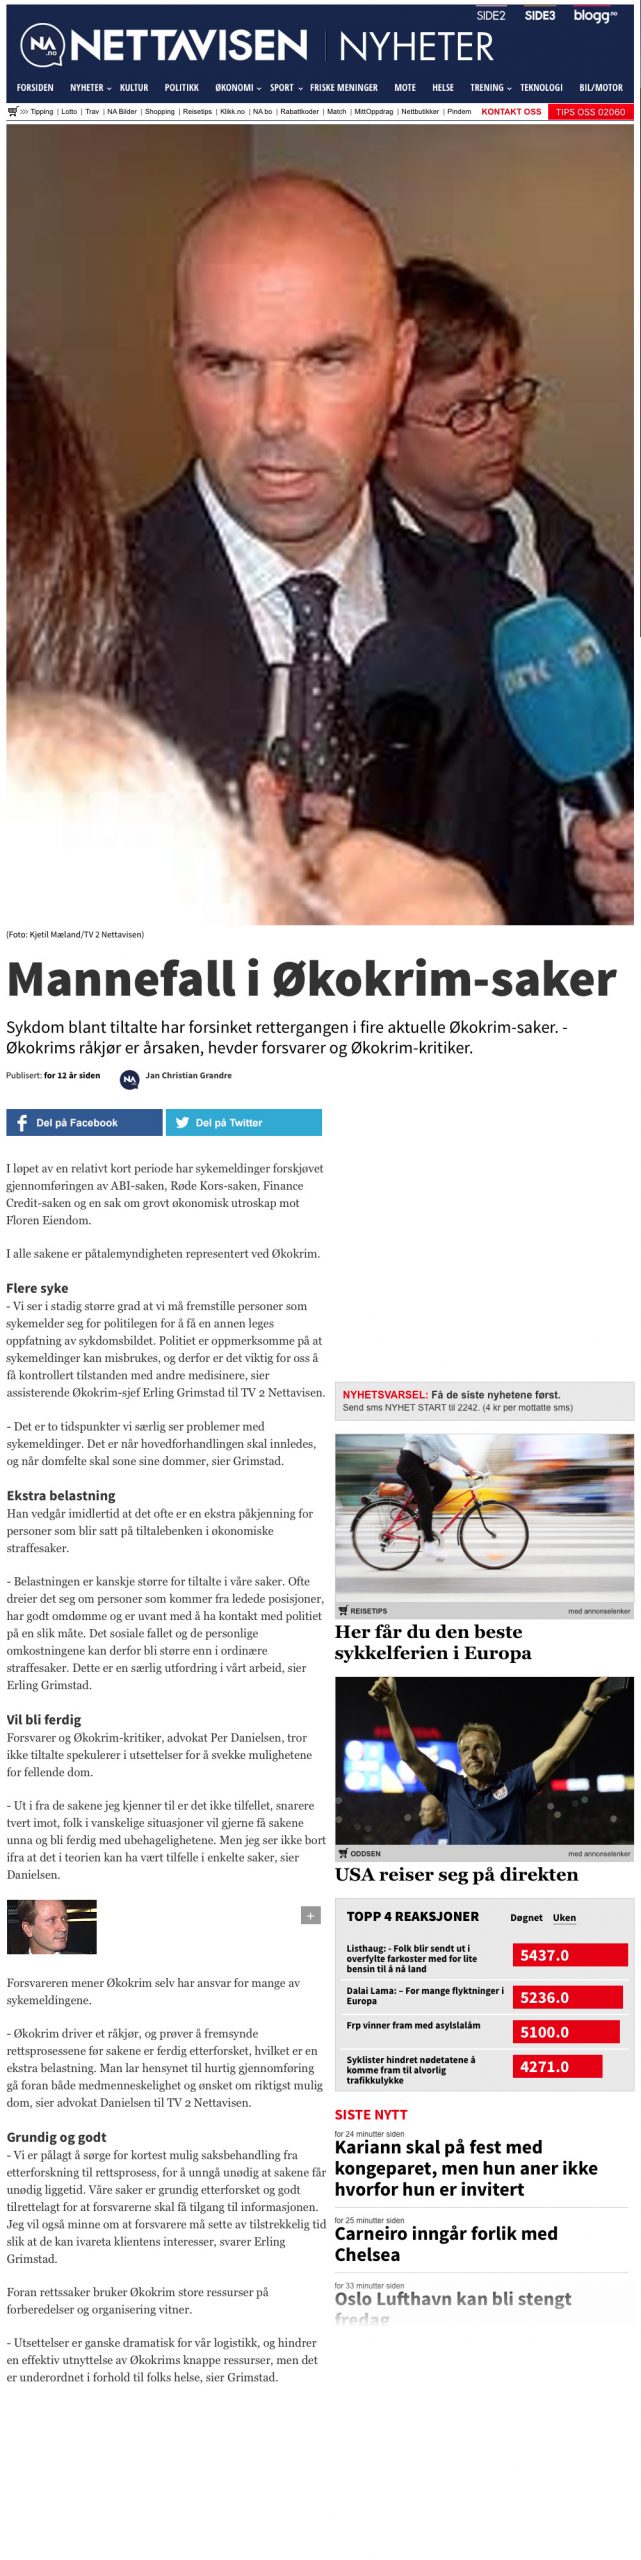 Rettsutvikling. Kritikk av Økokrim. Advokat Danielsen & Co. Per Danielsen. Advokat i Oslo.